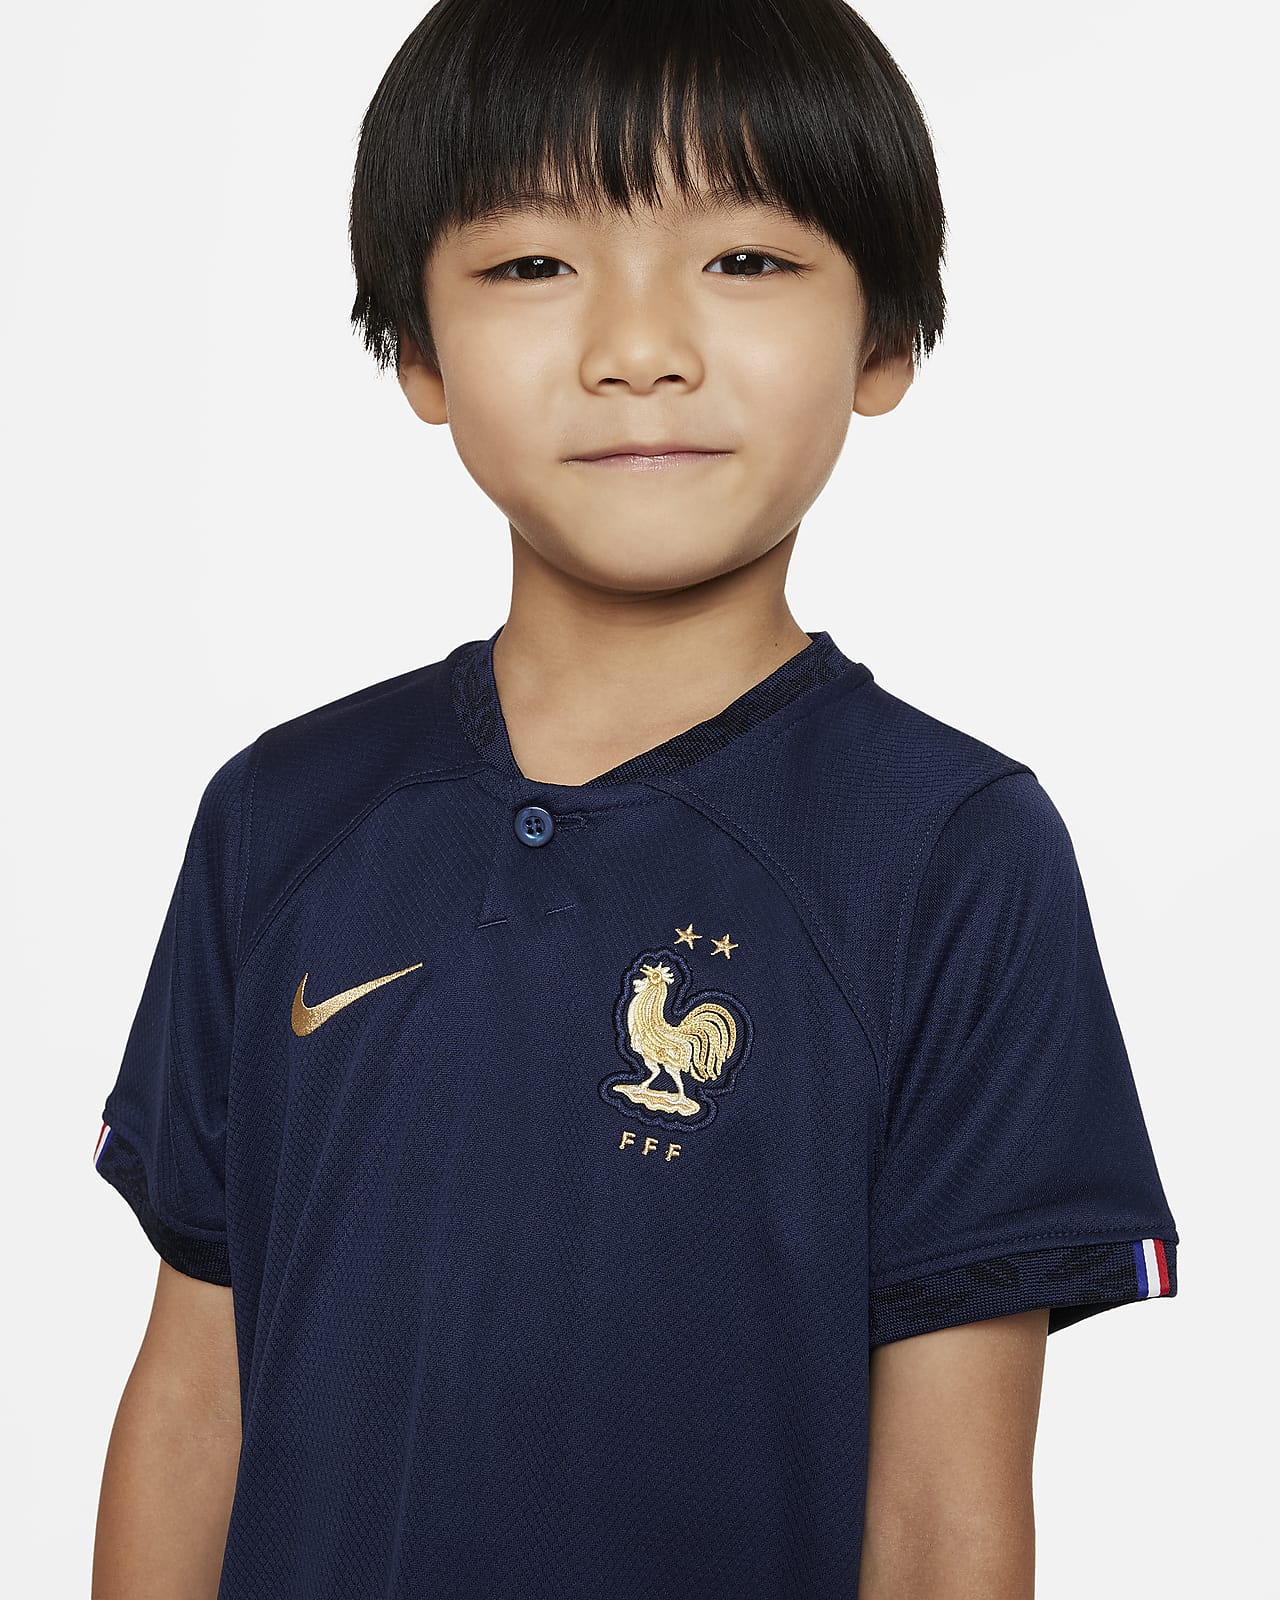 Maillot de football Nike Clubs pour Enfant - DN1304